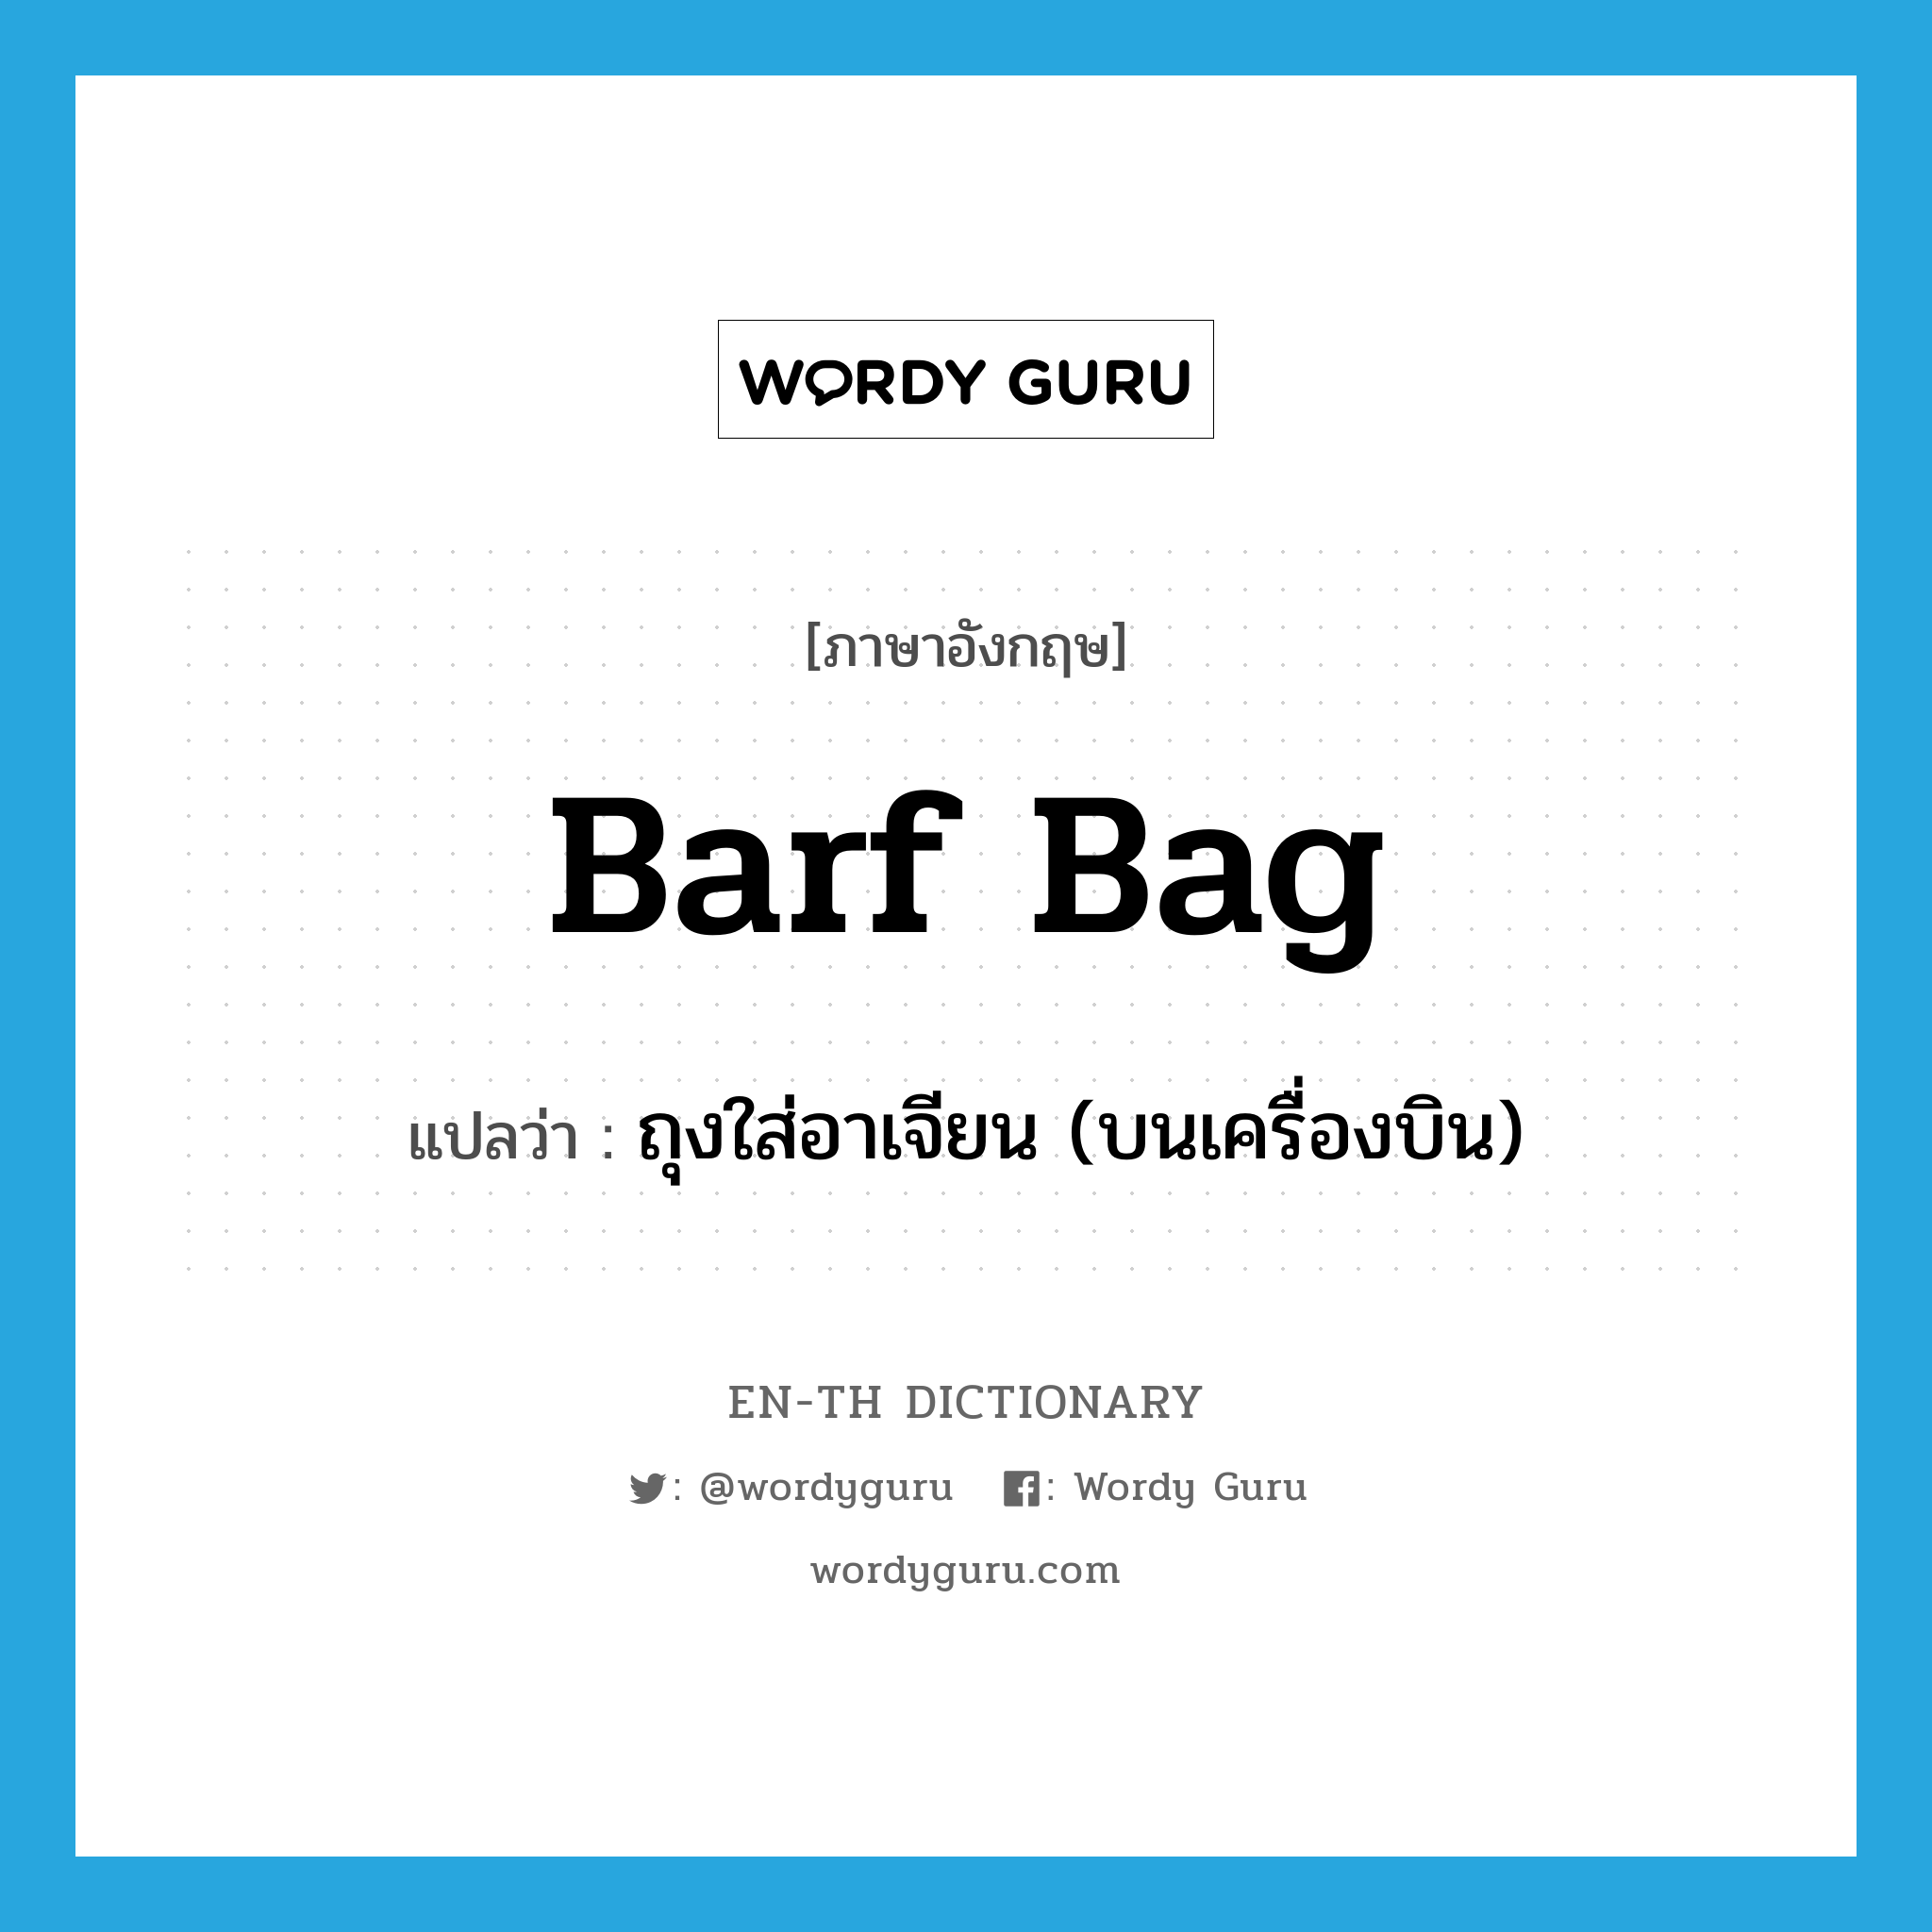 barf bag แปลว่า?, คำศัพท์ภาษาอังกฤษ barf bag แปลว่า ถุงใส่อาเจียน (บนเครื่องบิน) ประเภท N หมวด N